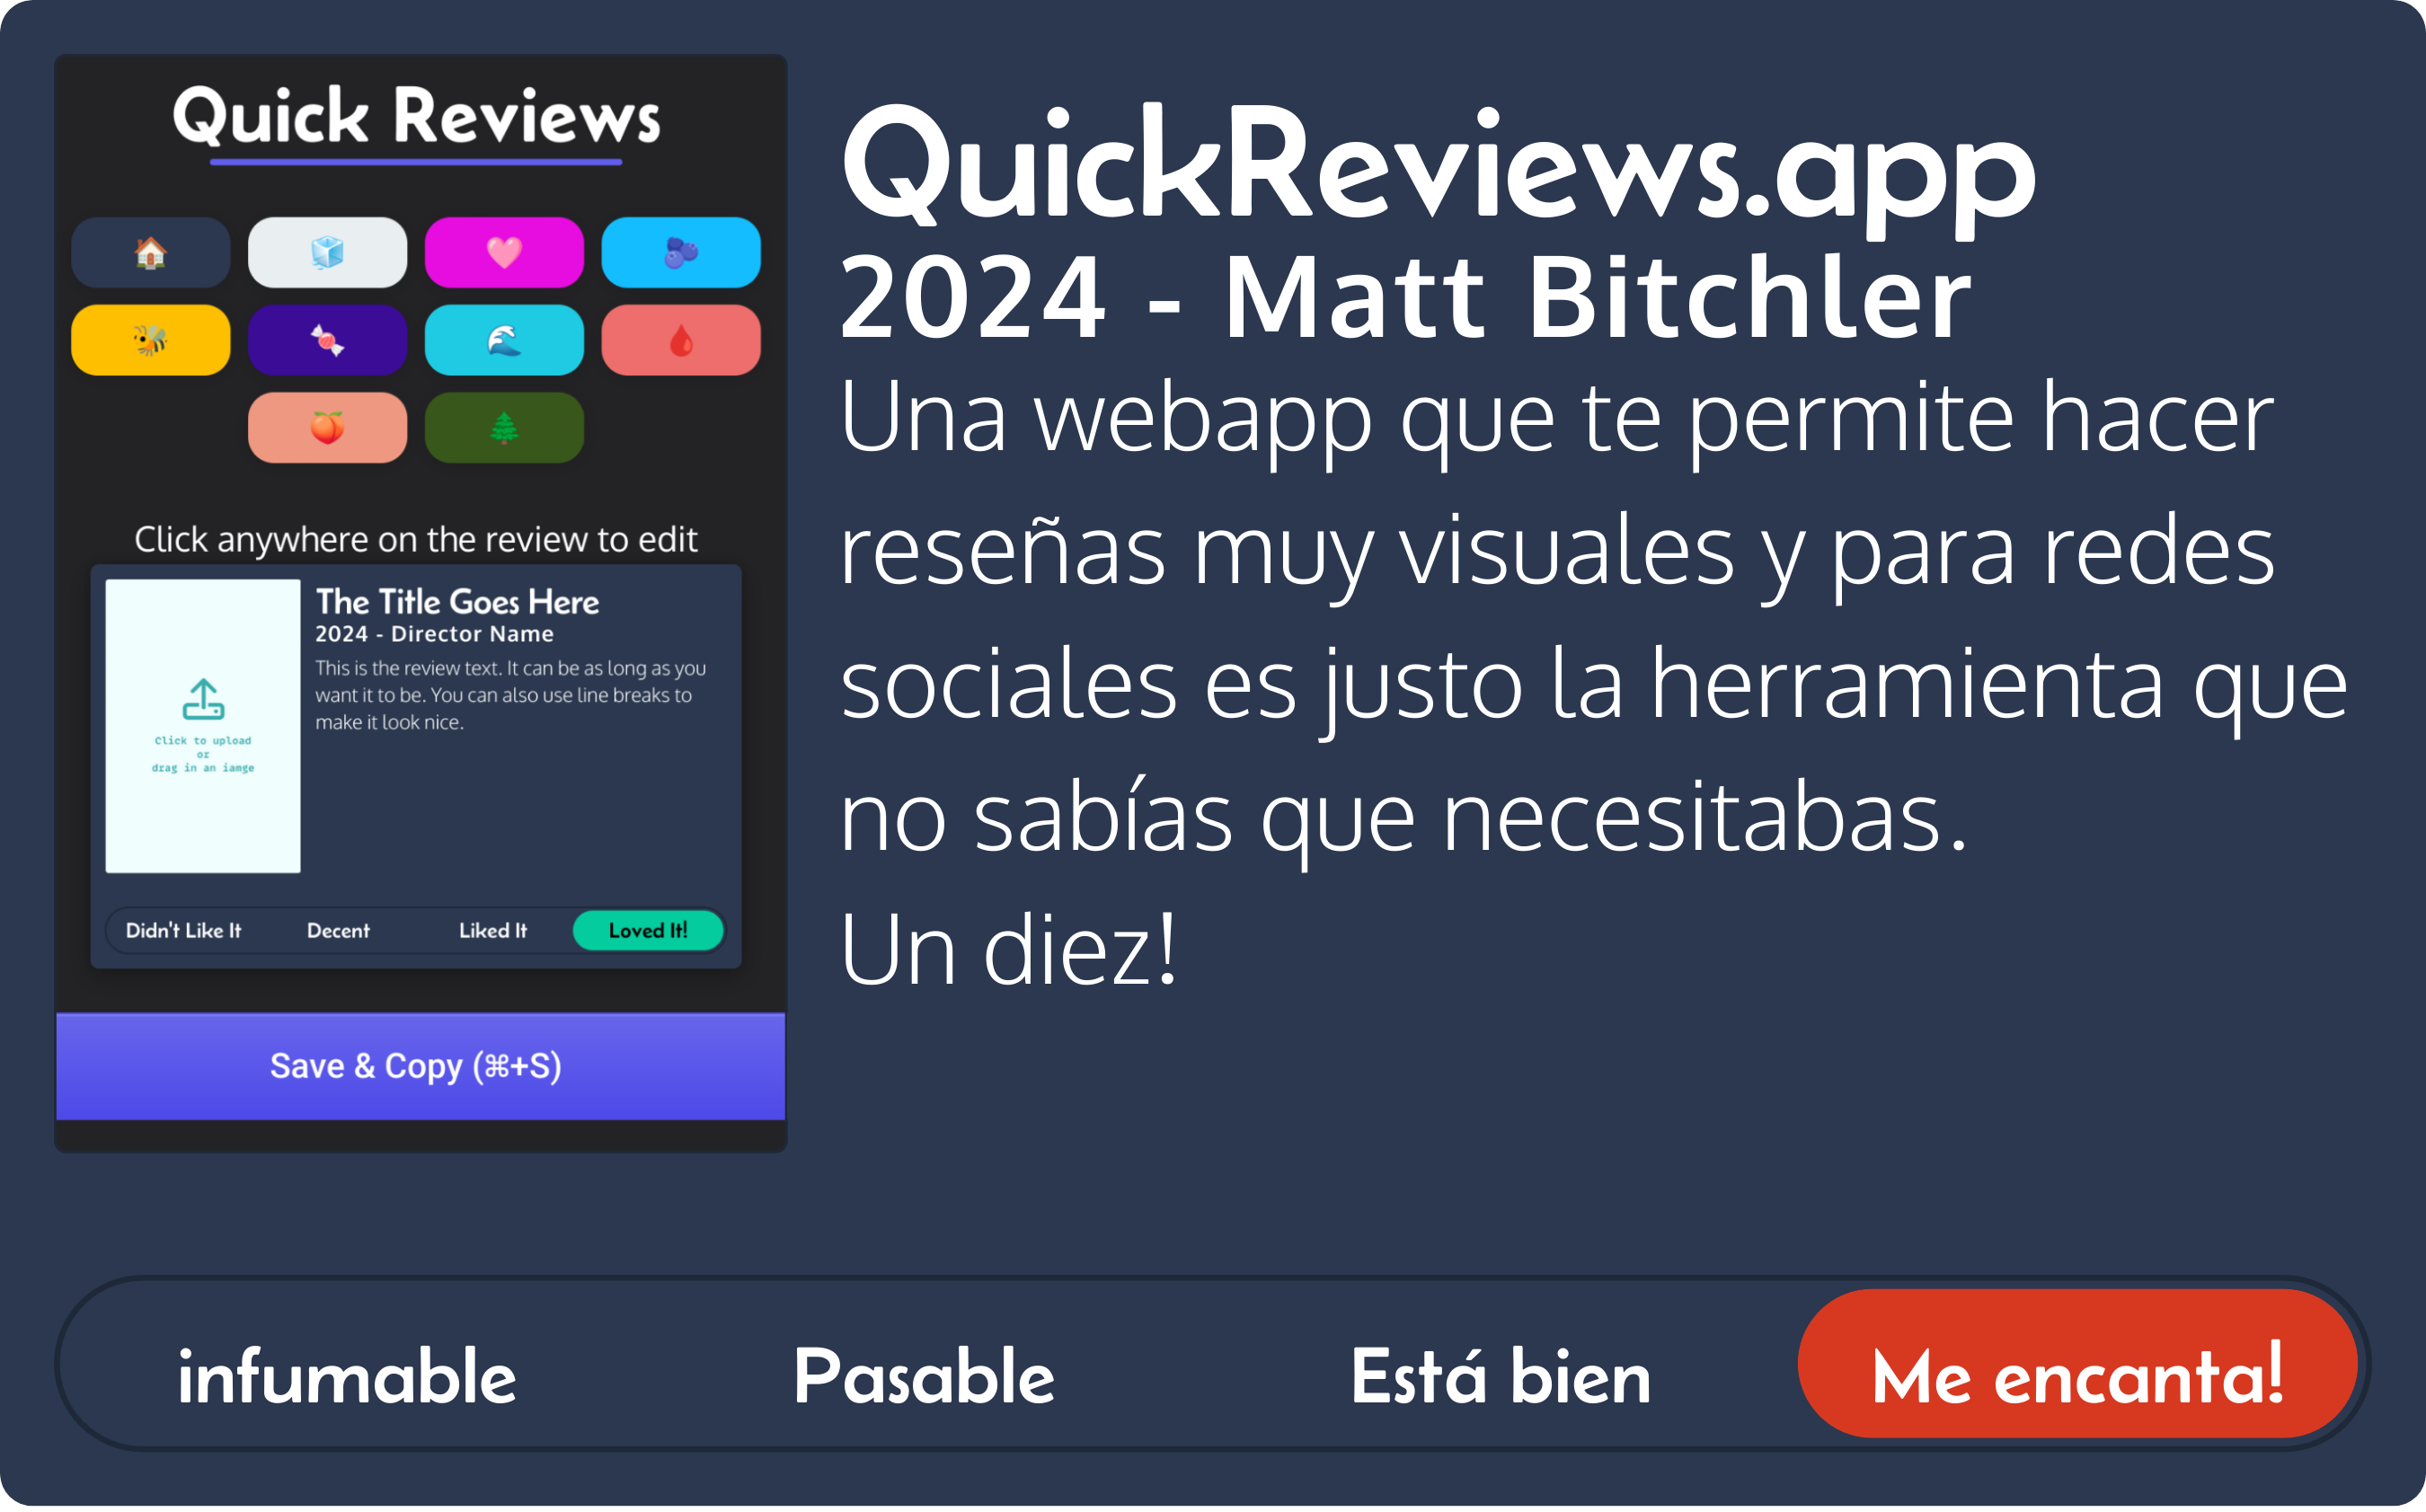 Ejemplo de reseña visual creada por quickreviews:
«QuickReviews.app
2024 - Matt Bitchler
Una webapp que te permite hacer reseñas muy visuales y para redes sociales es justo la herramienta que no sabías que necesitabas.
Un diez!»